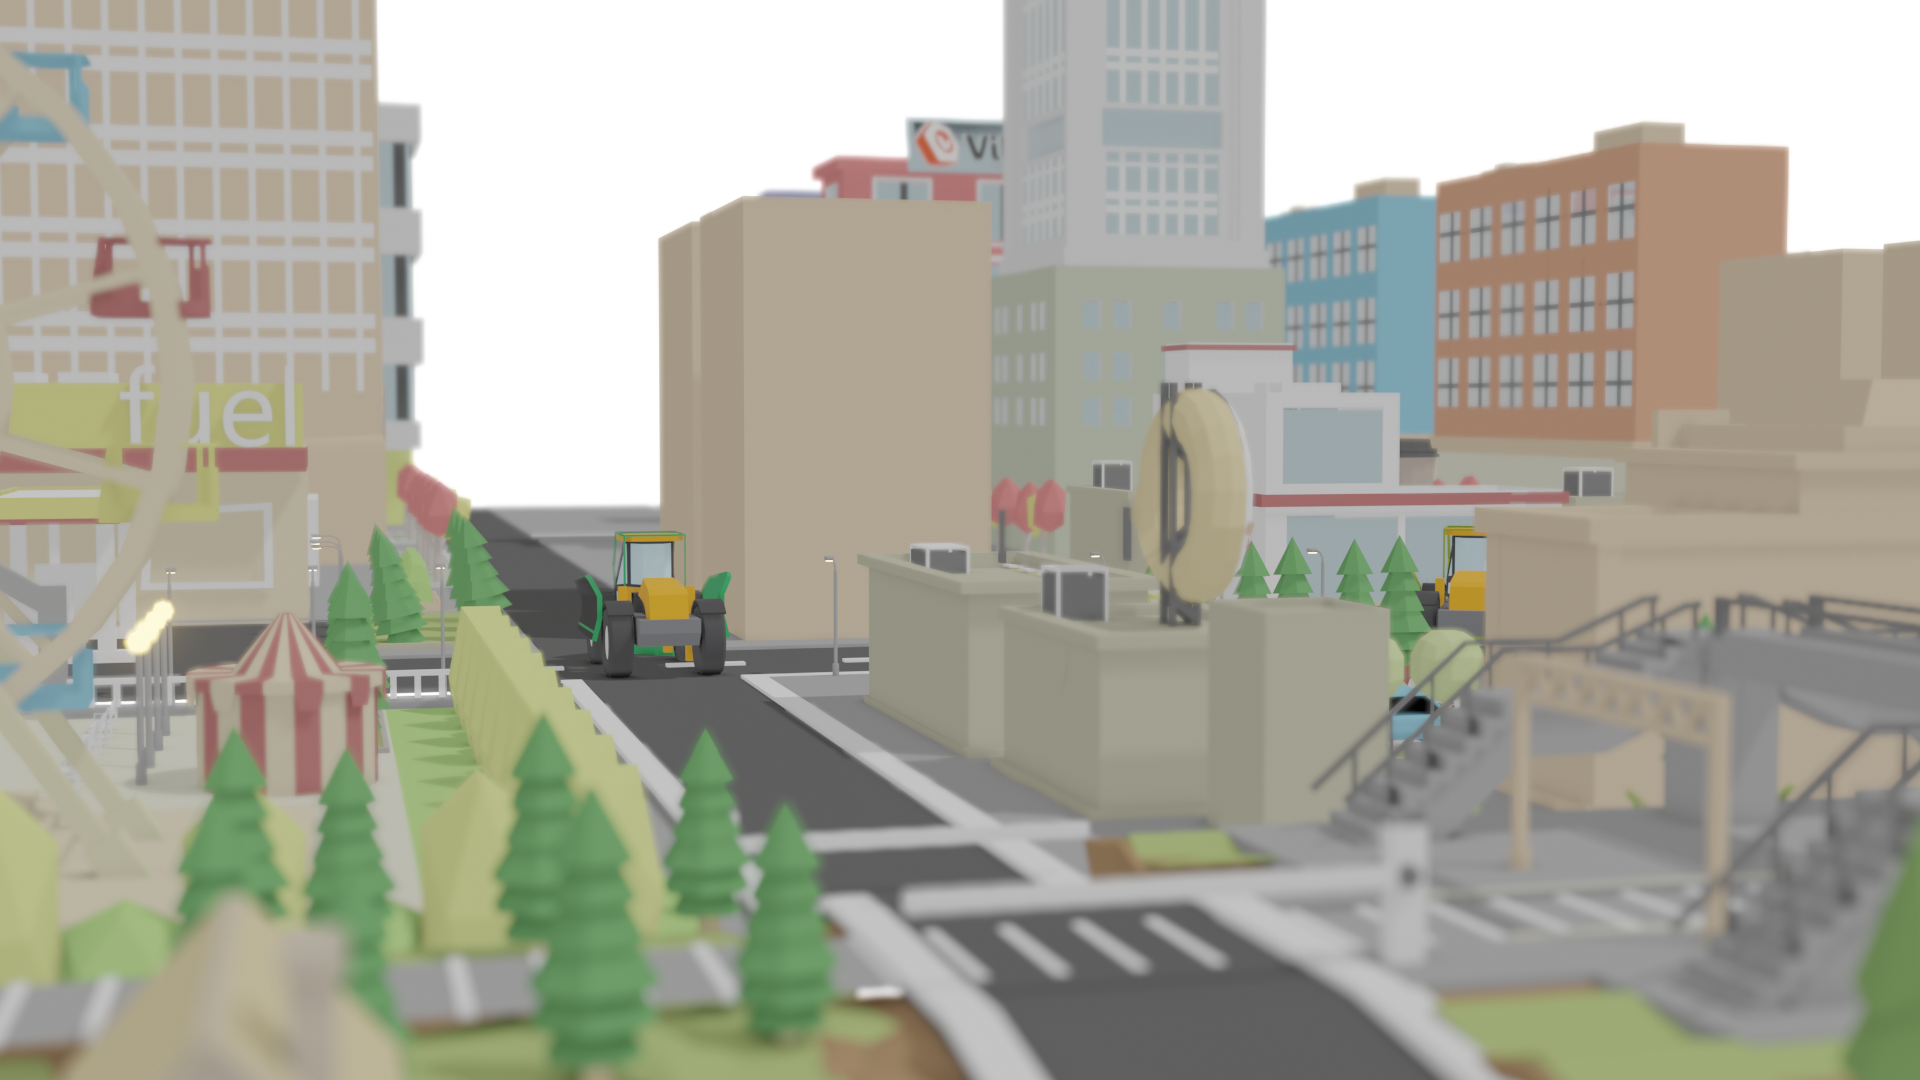 Démonstration de l'utilisation d'un serious game : virtualisation d'une ville